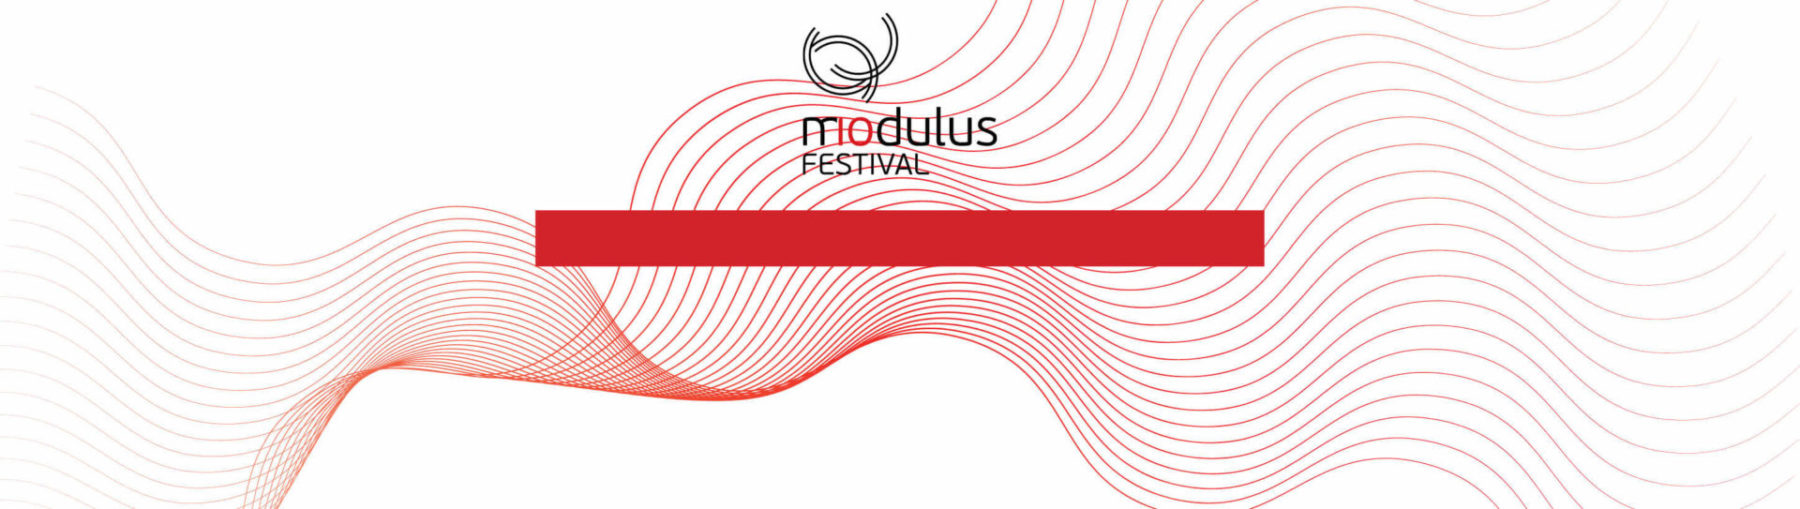 Modulus 10 Festival Website Banner